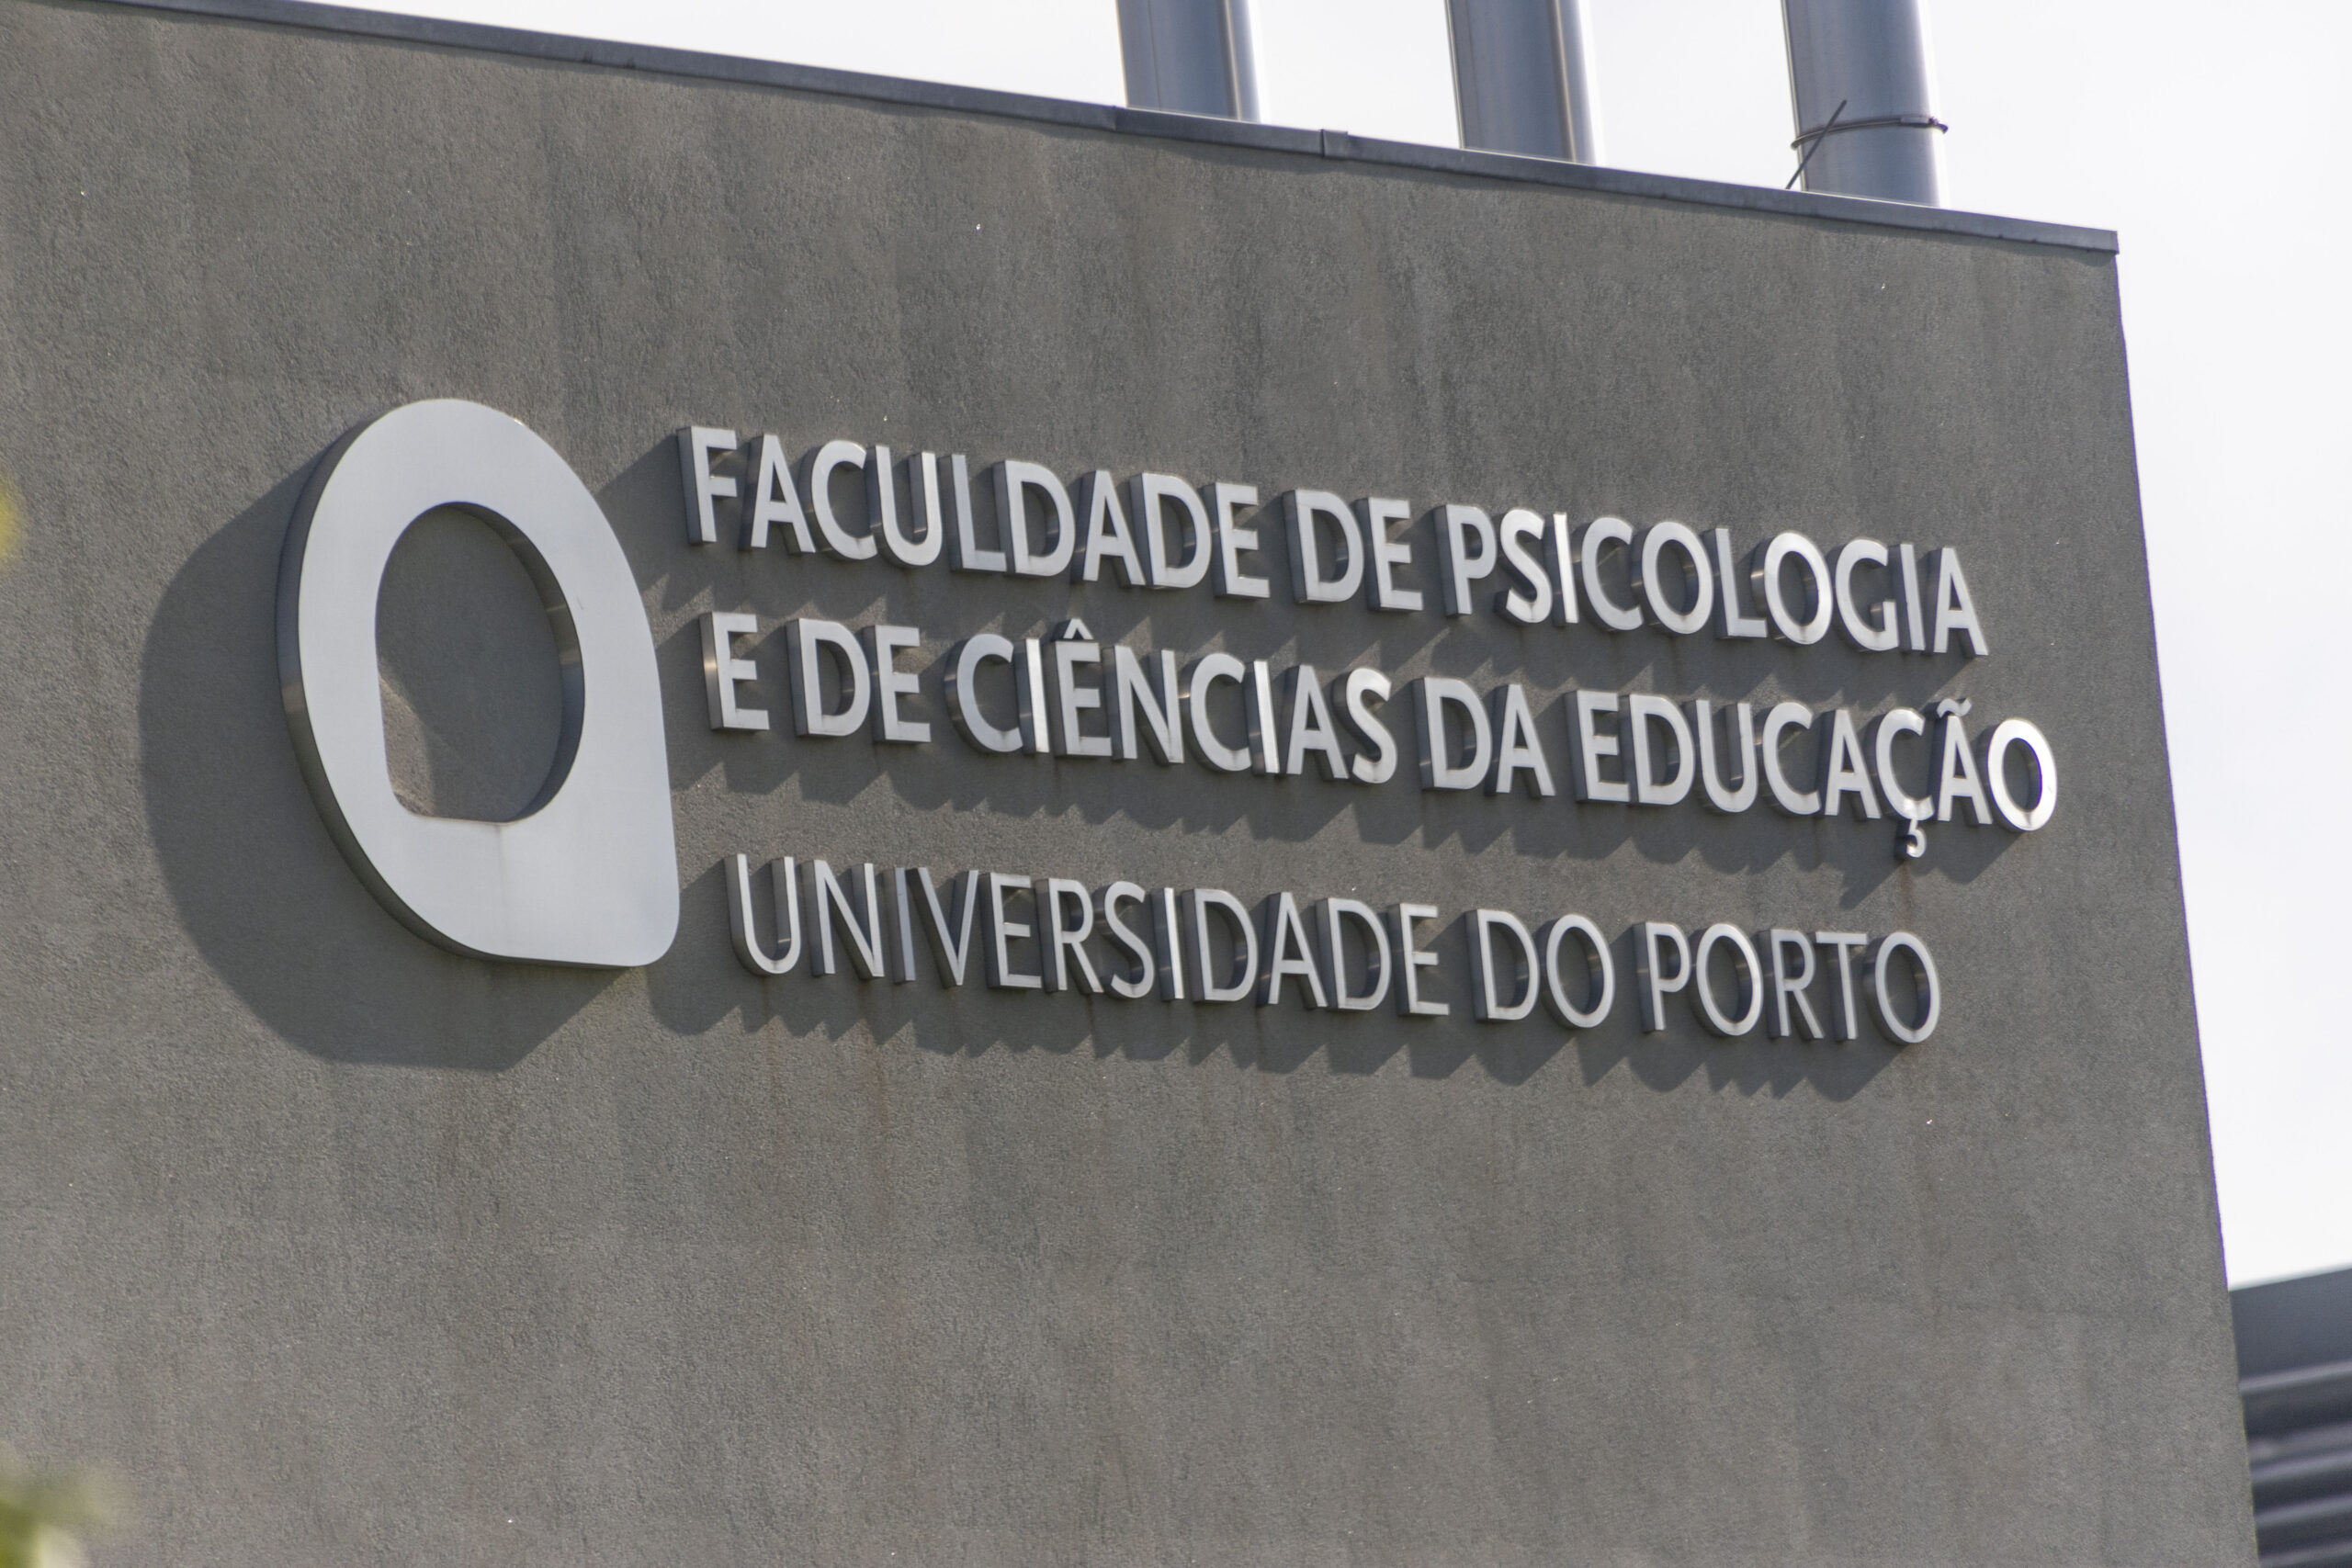 FPCEUP - Faculdade de Psicologia e de Ciências da Educação da Universidade  do Porto